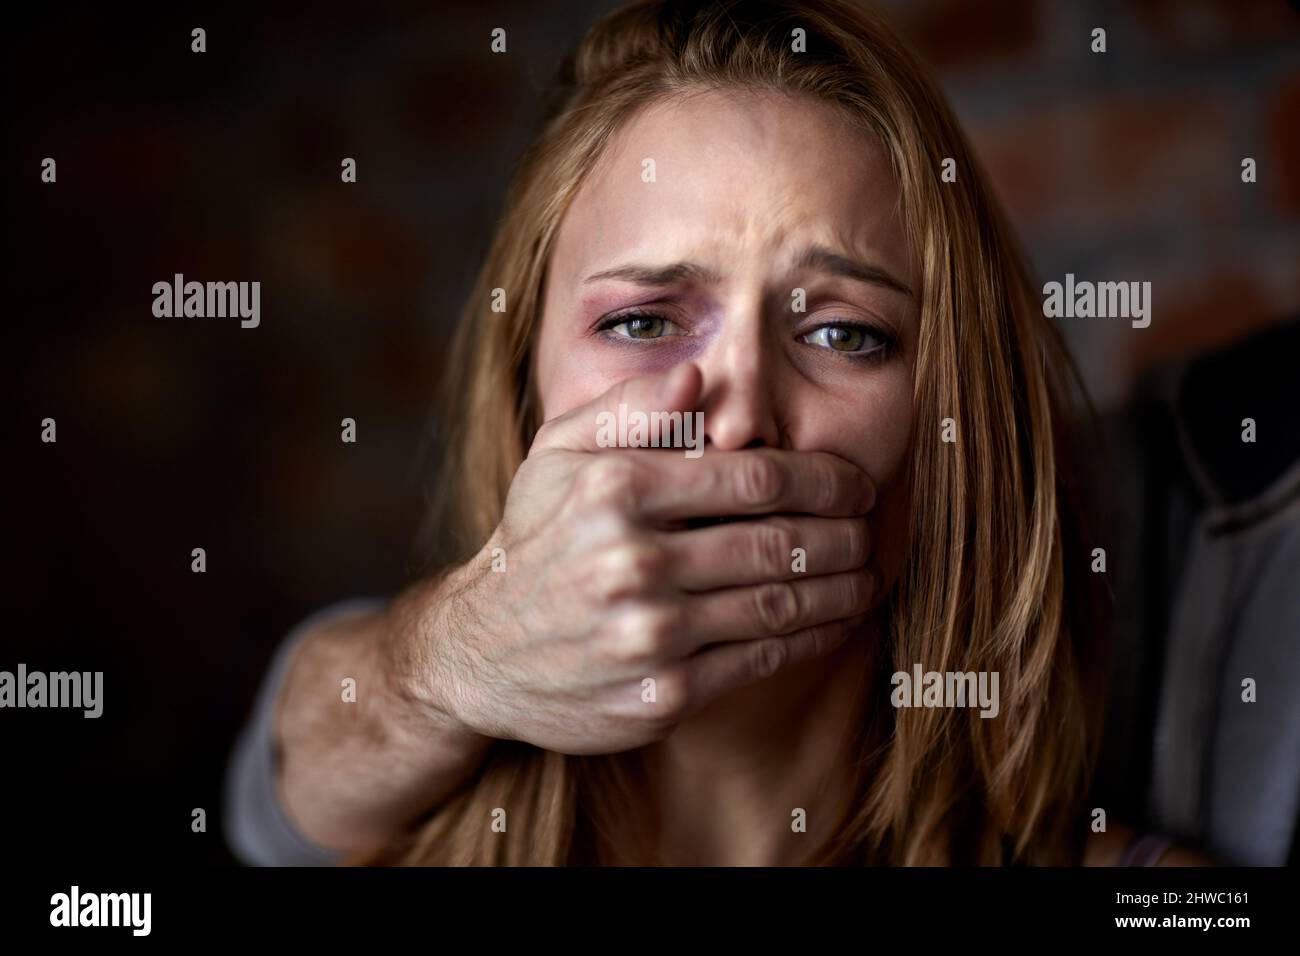 Cacciatorpediniere silenzioso. La giovane donna abusata è stata messa al silenzio dal suo abuser. Foto Stock